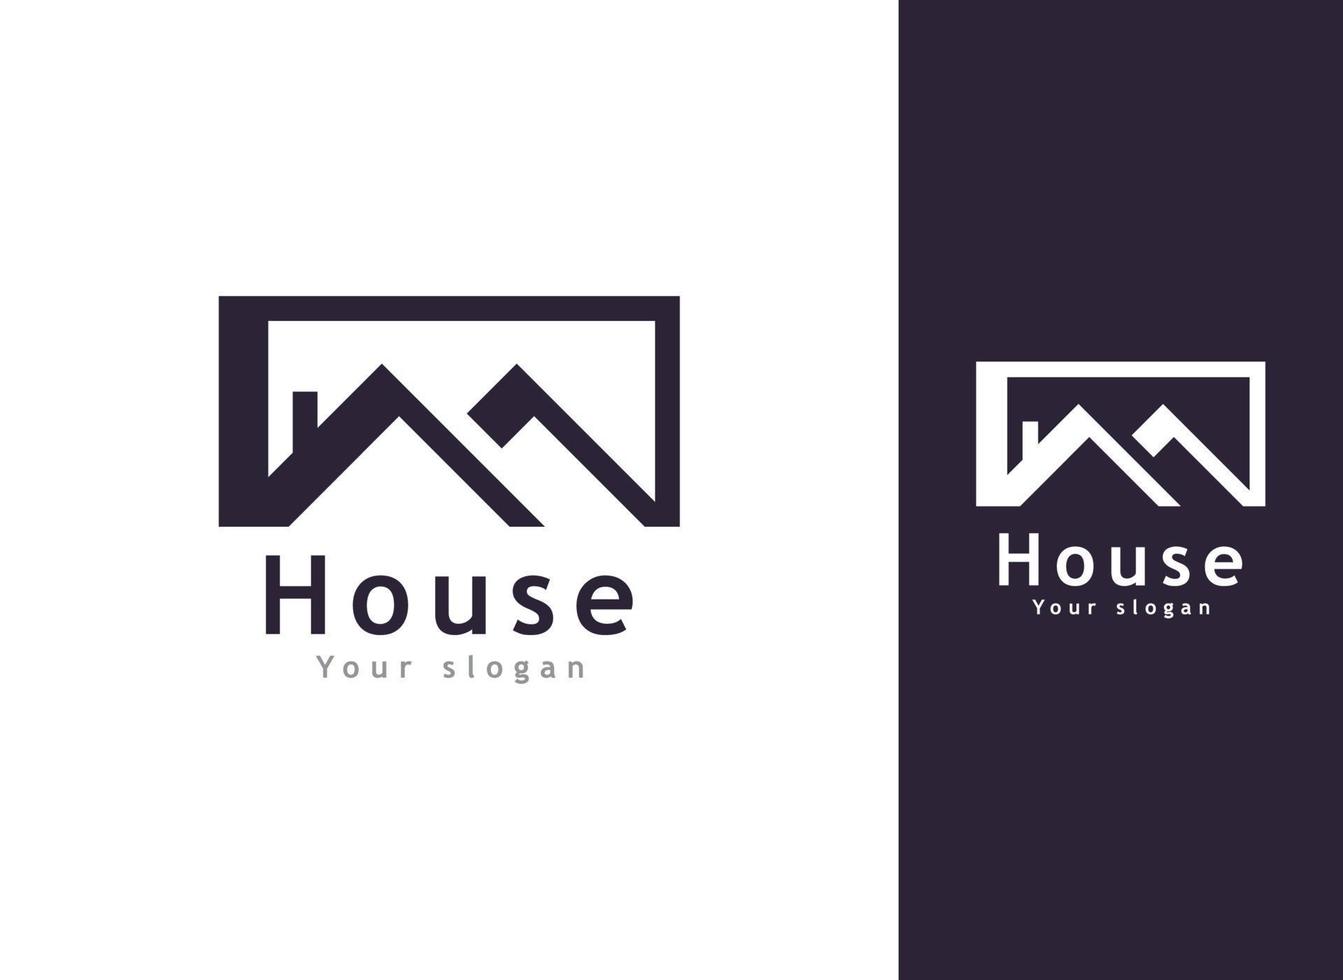 modello di logo vettoriale immobiliare, casa moderna e logo di proprietà